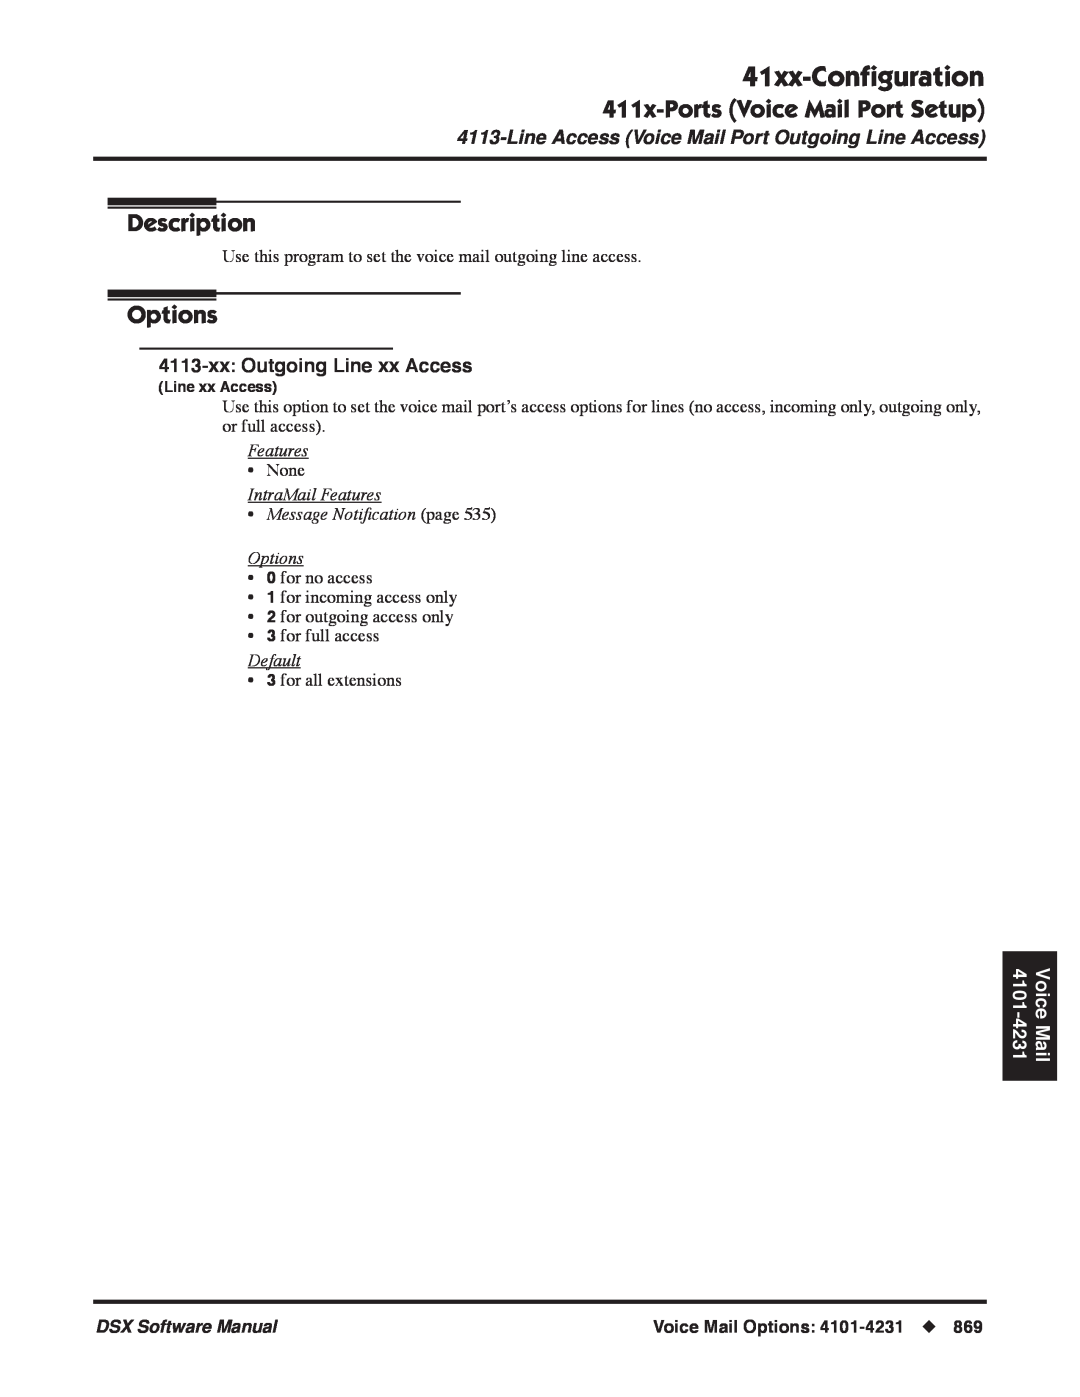 NEC 41xx-Conﬁguration, 411x-PortsVoice Mail Port Setup, Description, Options, 4113-xx:Outgoing Line xx Access, Features 